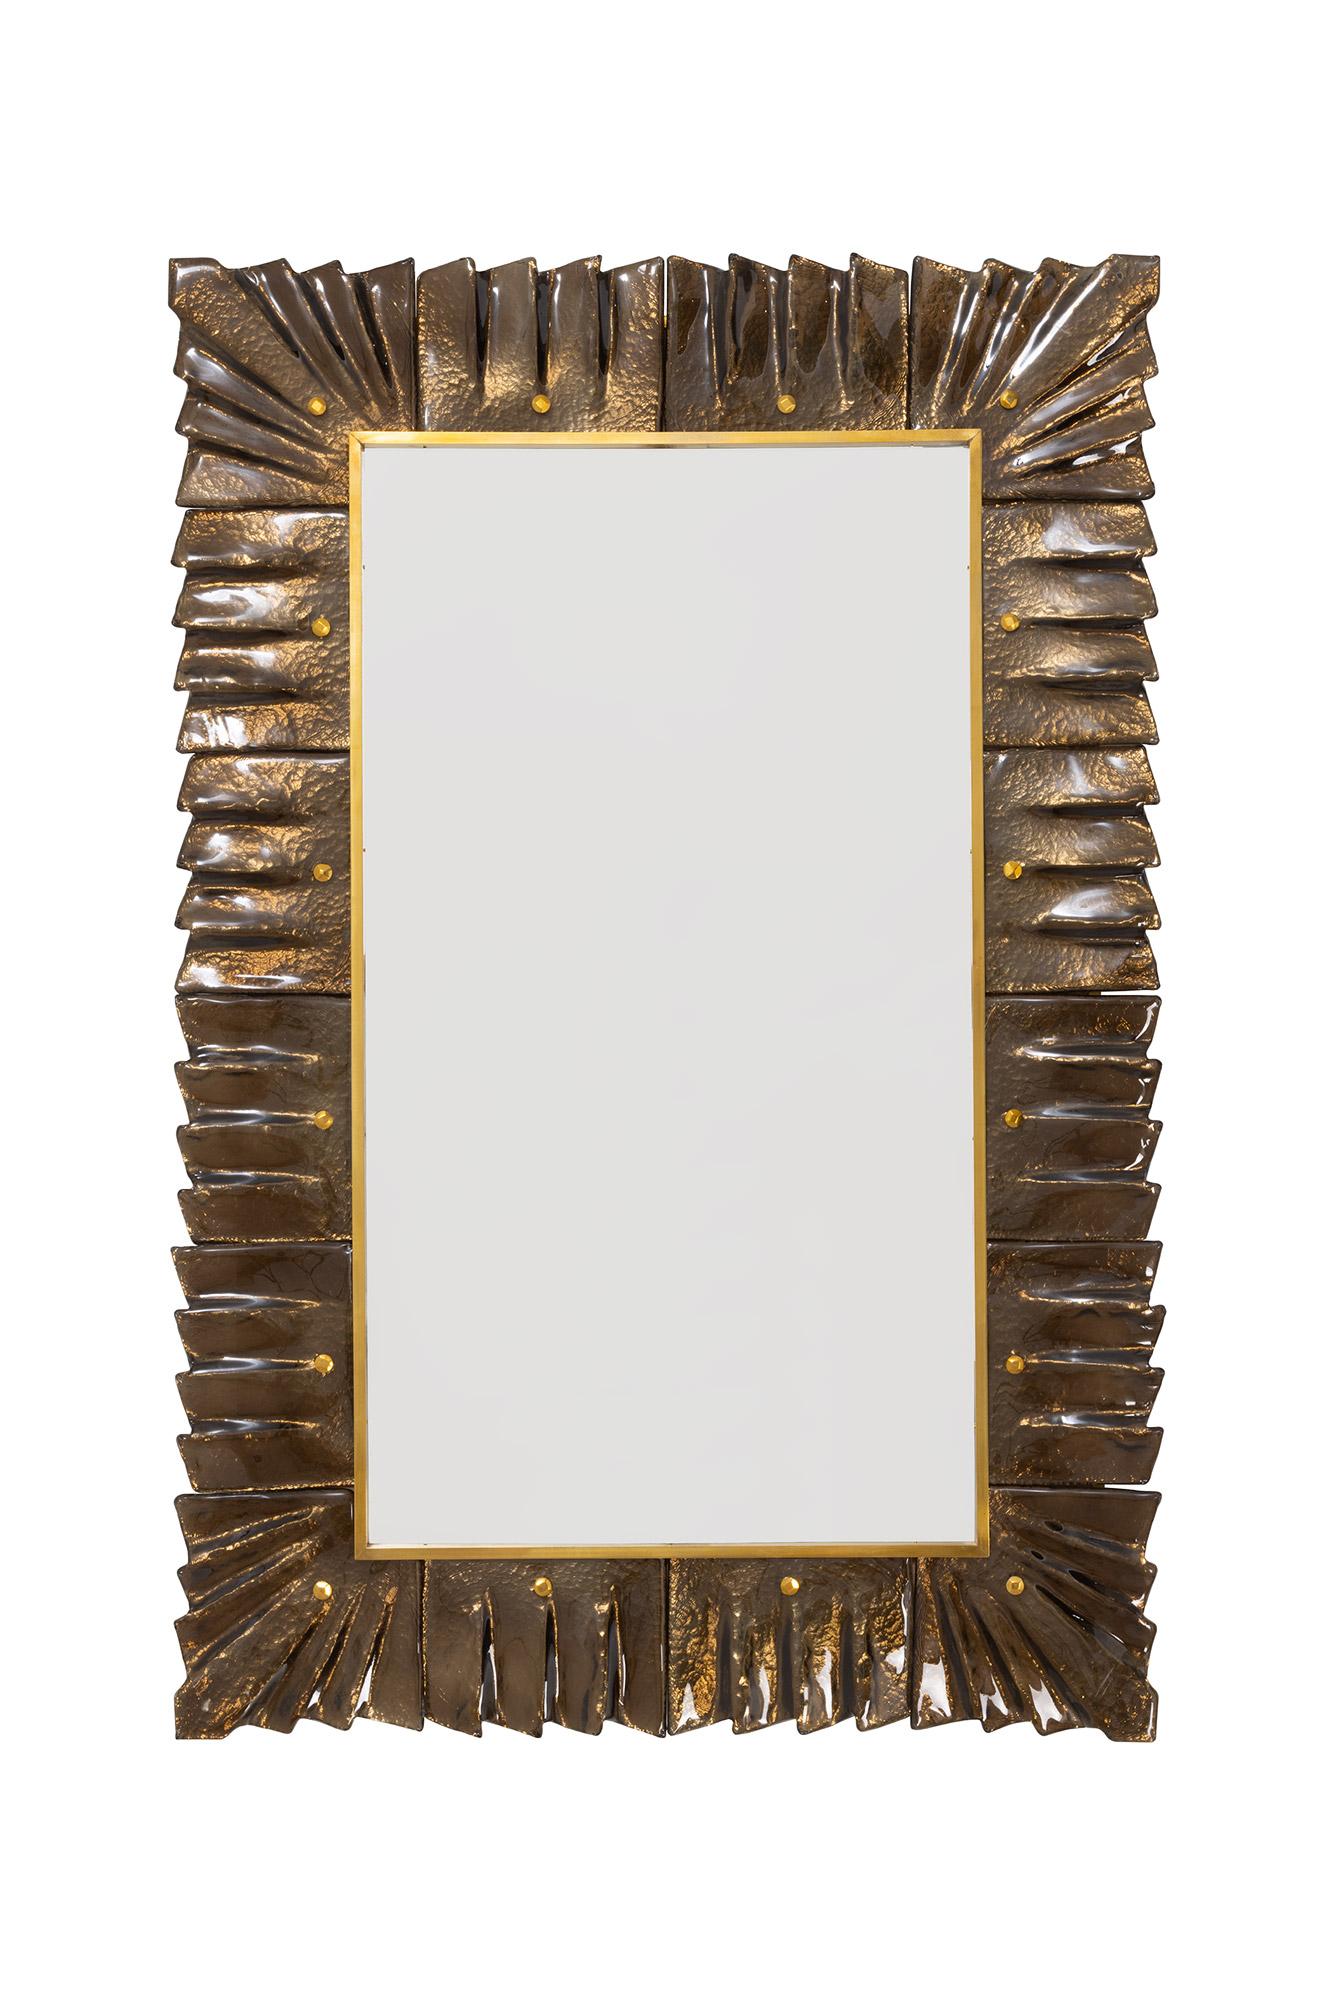 Miroir rectangulaire contemporain encadré en verre de Murano, ambre, teinte bronze, en stock
Plaque de miroir entourée de carreaux de verre ondulés de couleur bronze/ambre retenus par des cabochons en laiton. 
Fabriqué à la main par une équipe